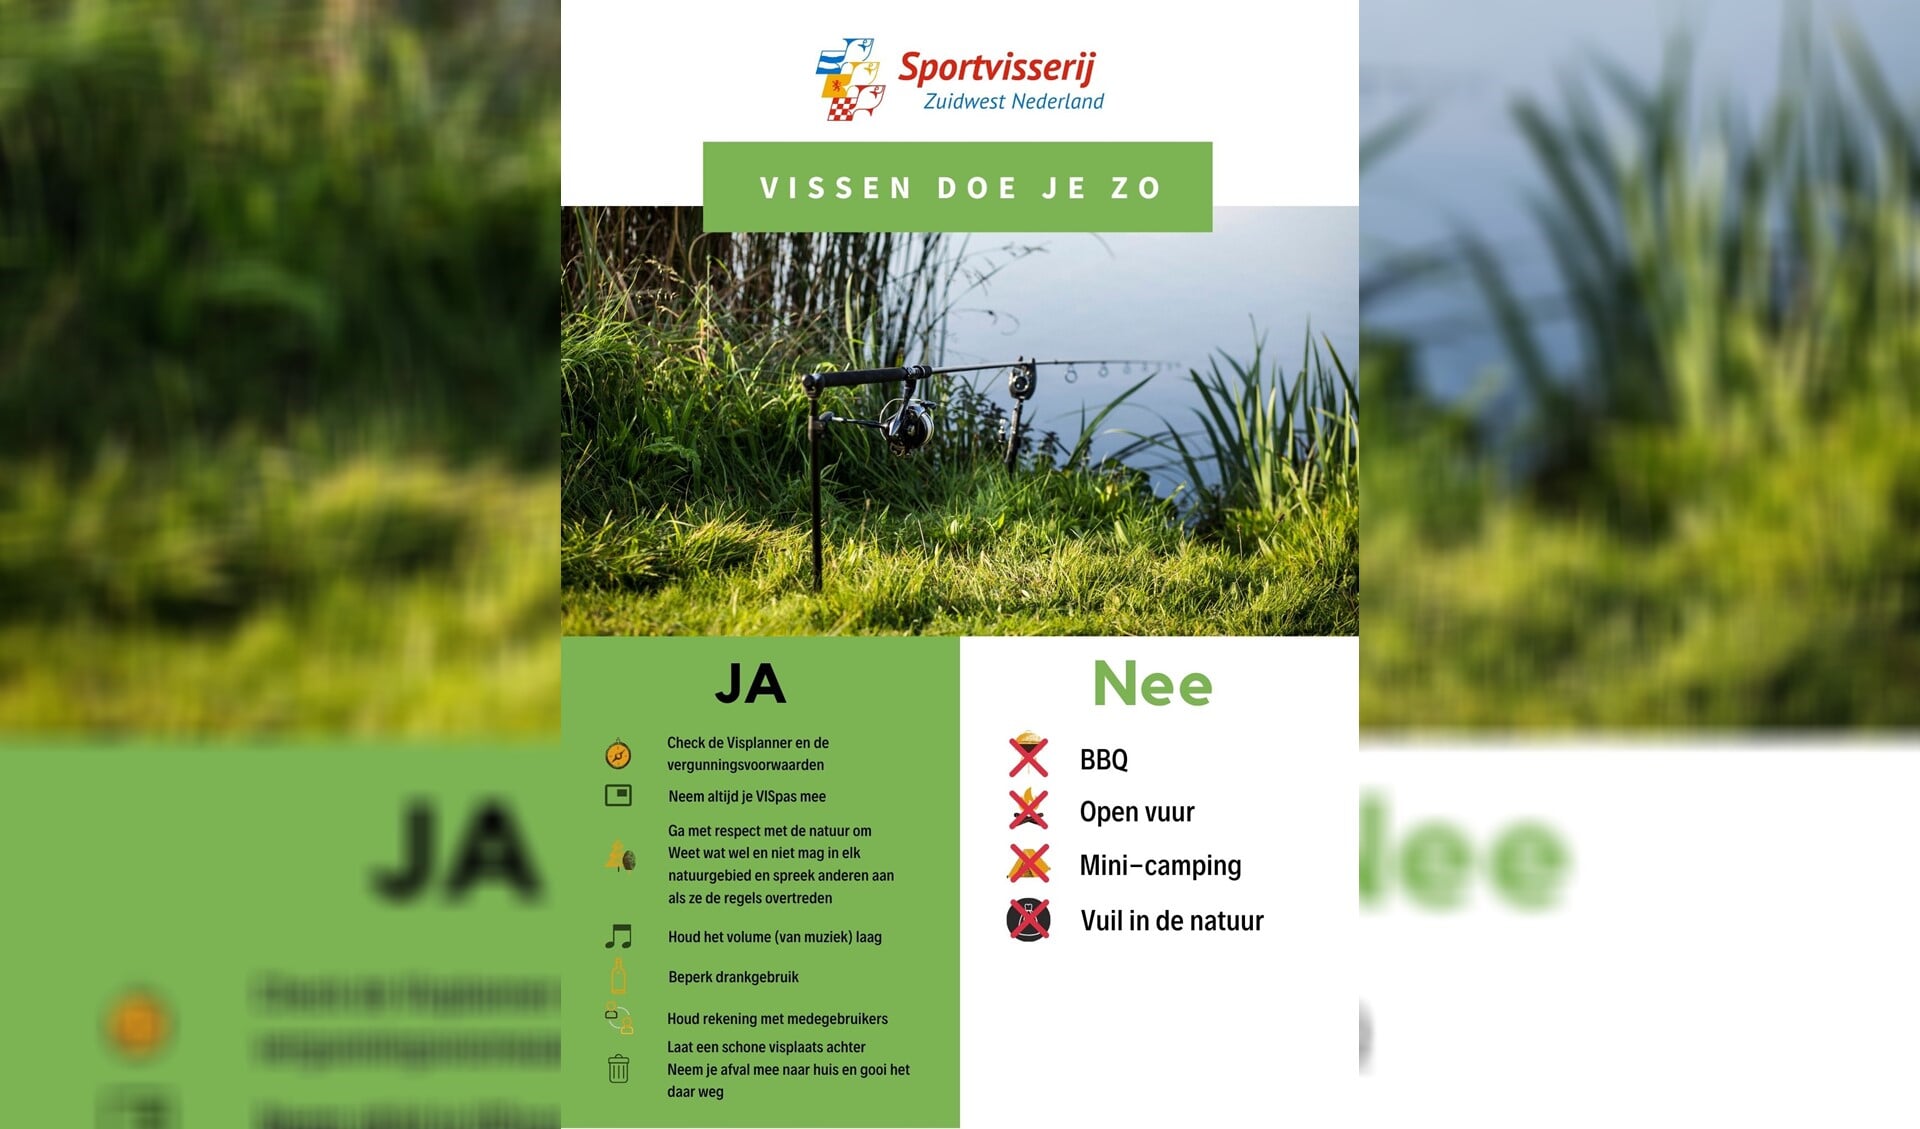 I.s.m. KSN, KWO en SNB heeft Sportvisserij Zuidwest Nederland een overzichtelijke flyer ontwikkeld met hierop de belangrijkste regels.